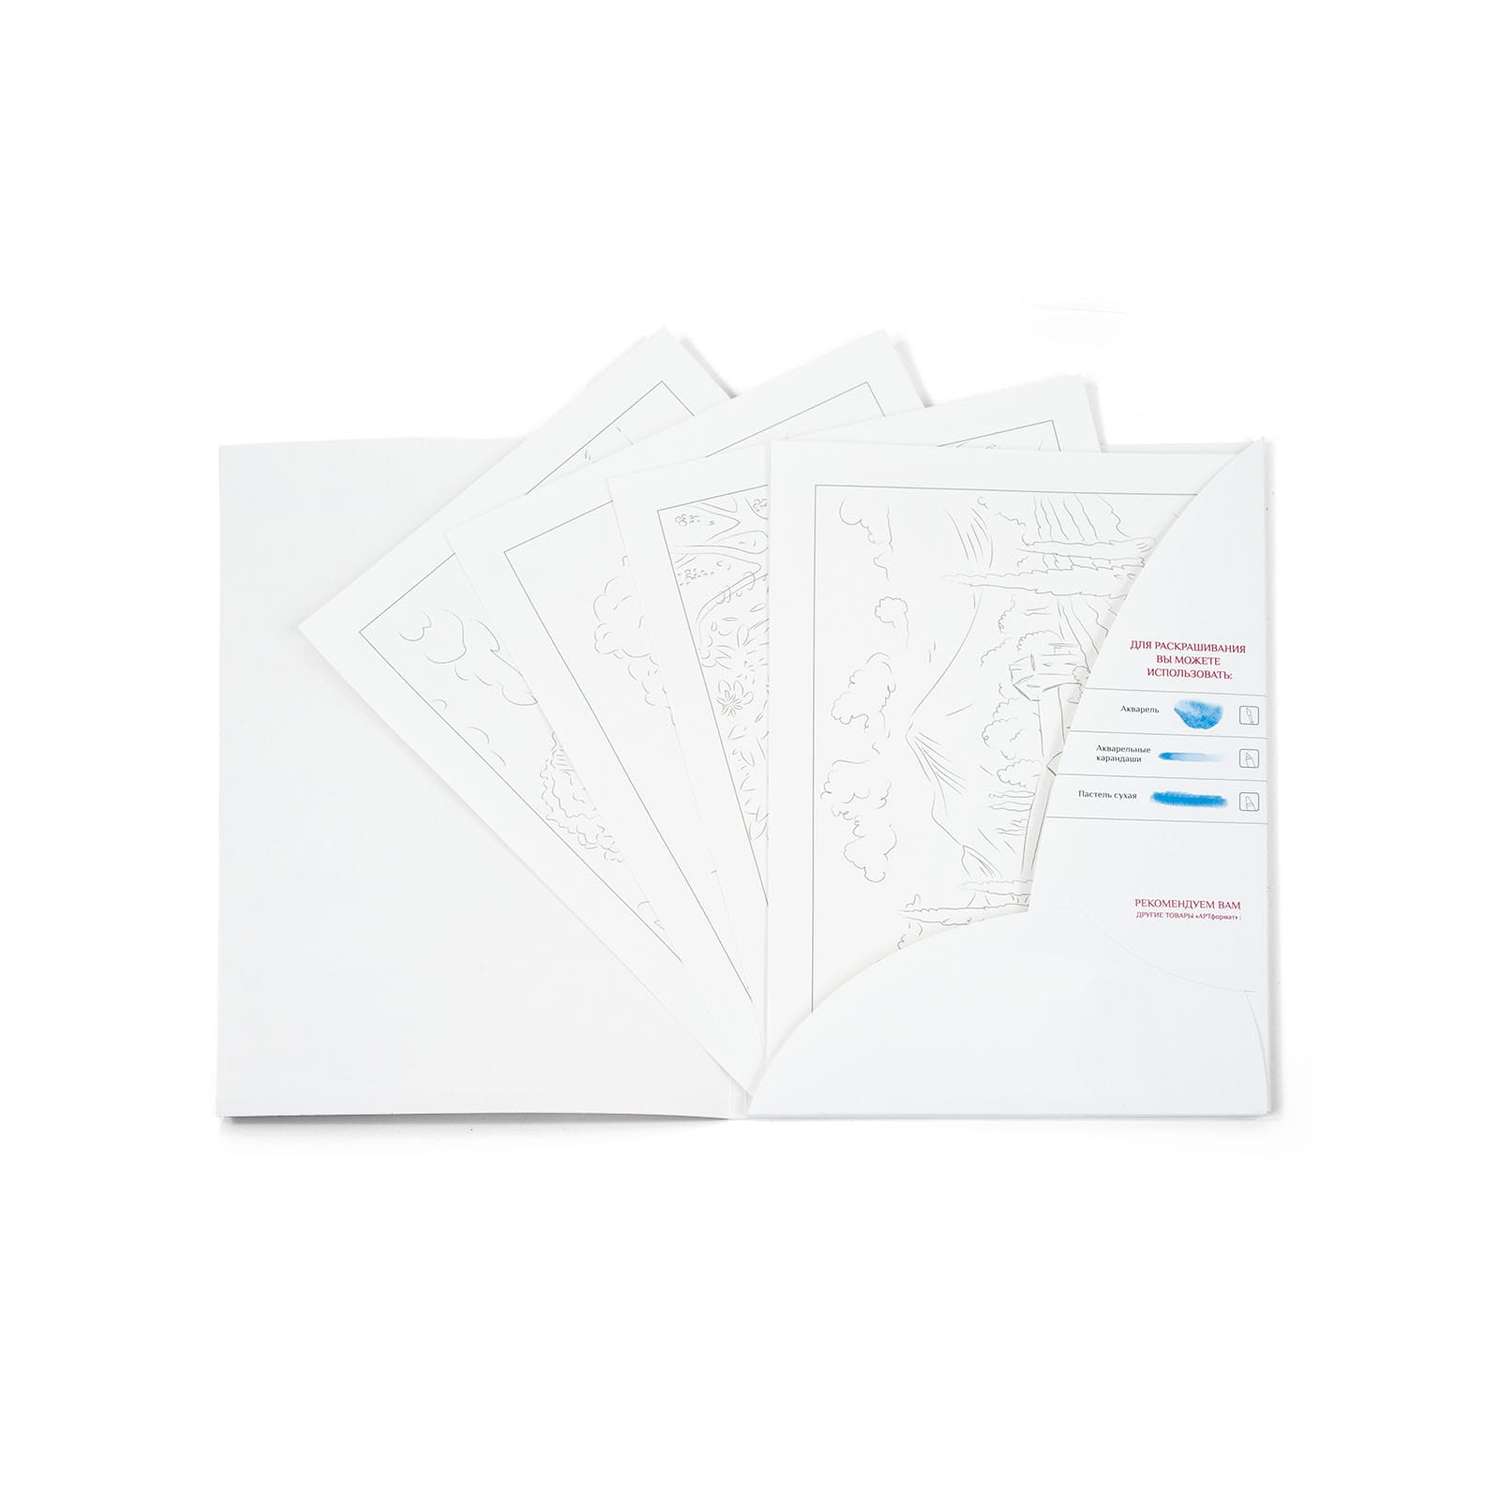 Раскраска-эскиз АРТформат Пейзажи 10 листов А4 акварельная бумага 200 грамм в папке - фото 3